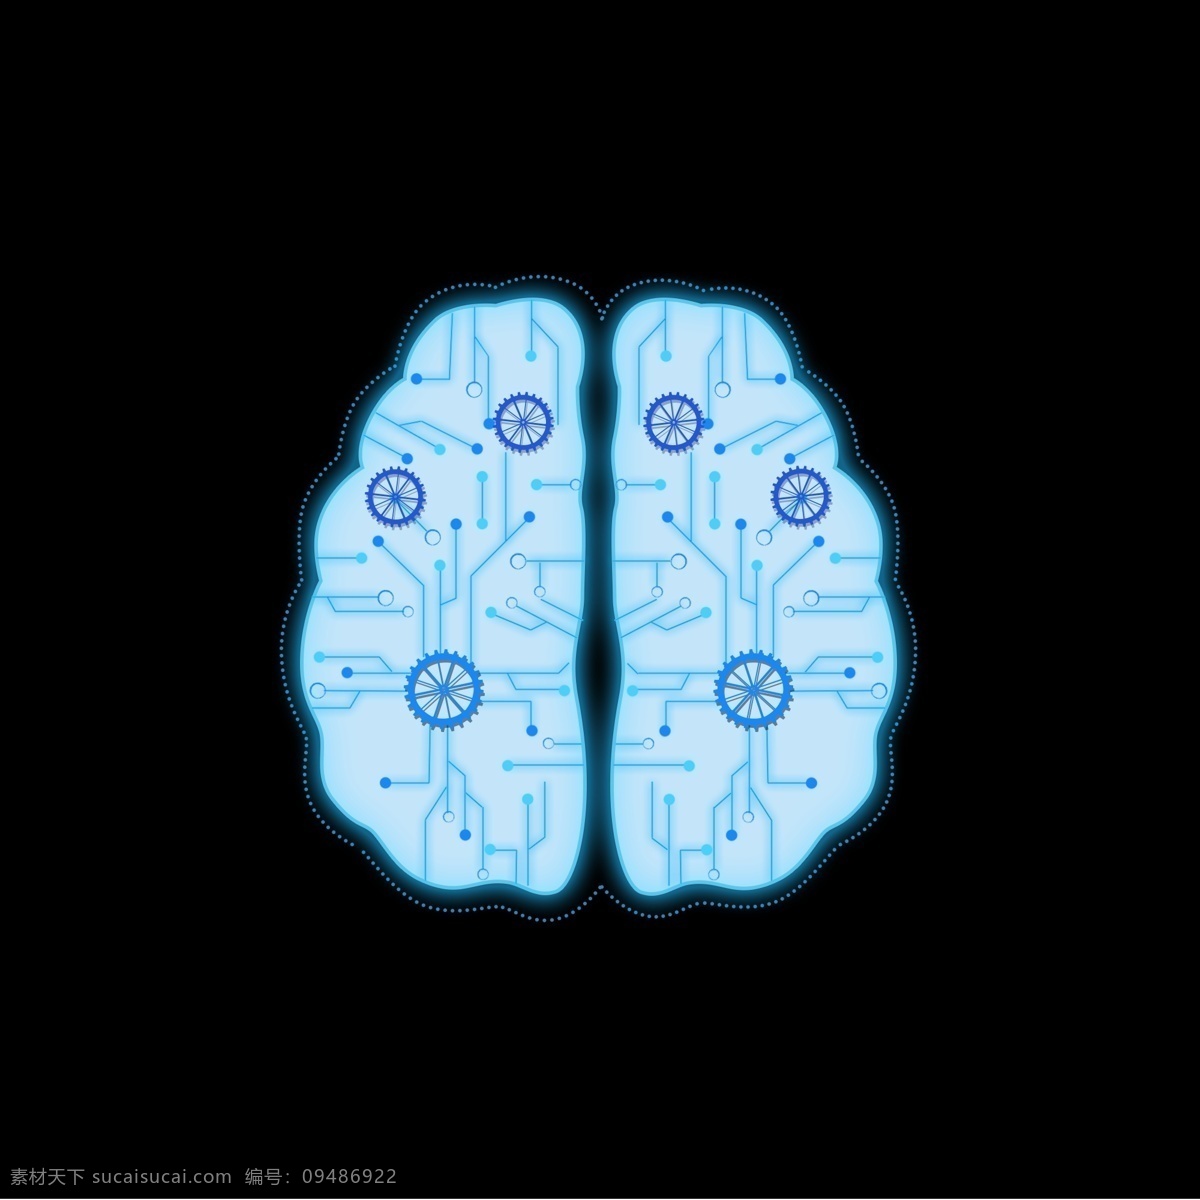 人工智能 科技 大脑 齿轮 蓝色 蓝色科技